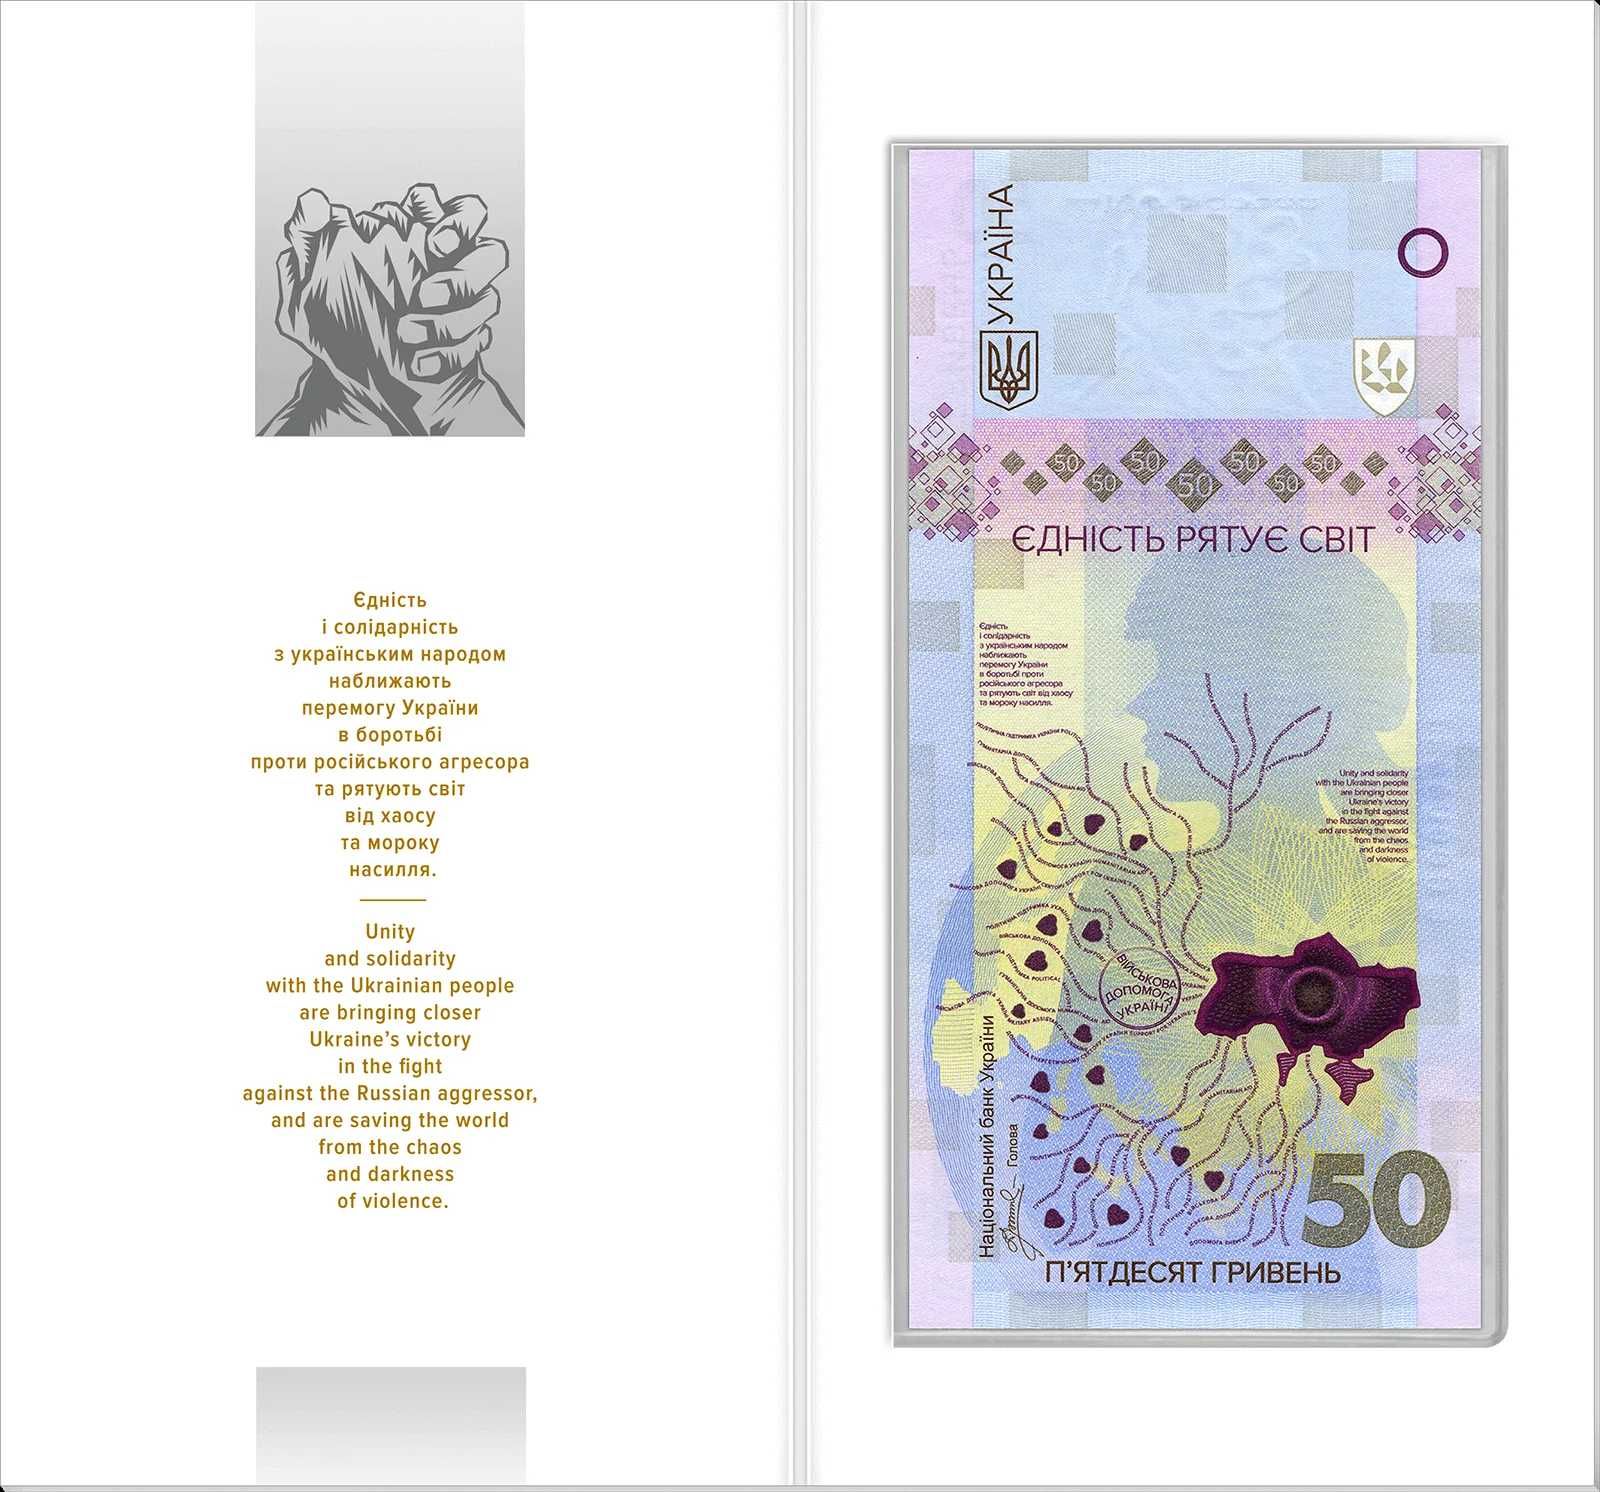 Пам`ятна банкнота 50 гривень, `Єдність рятує світ`